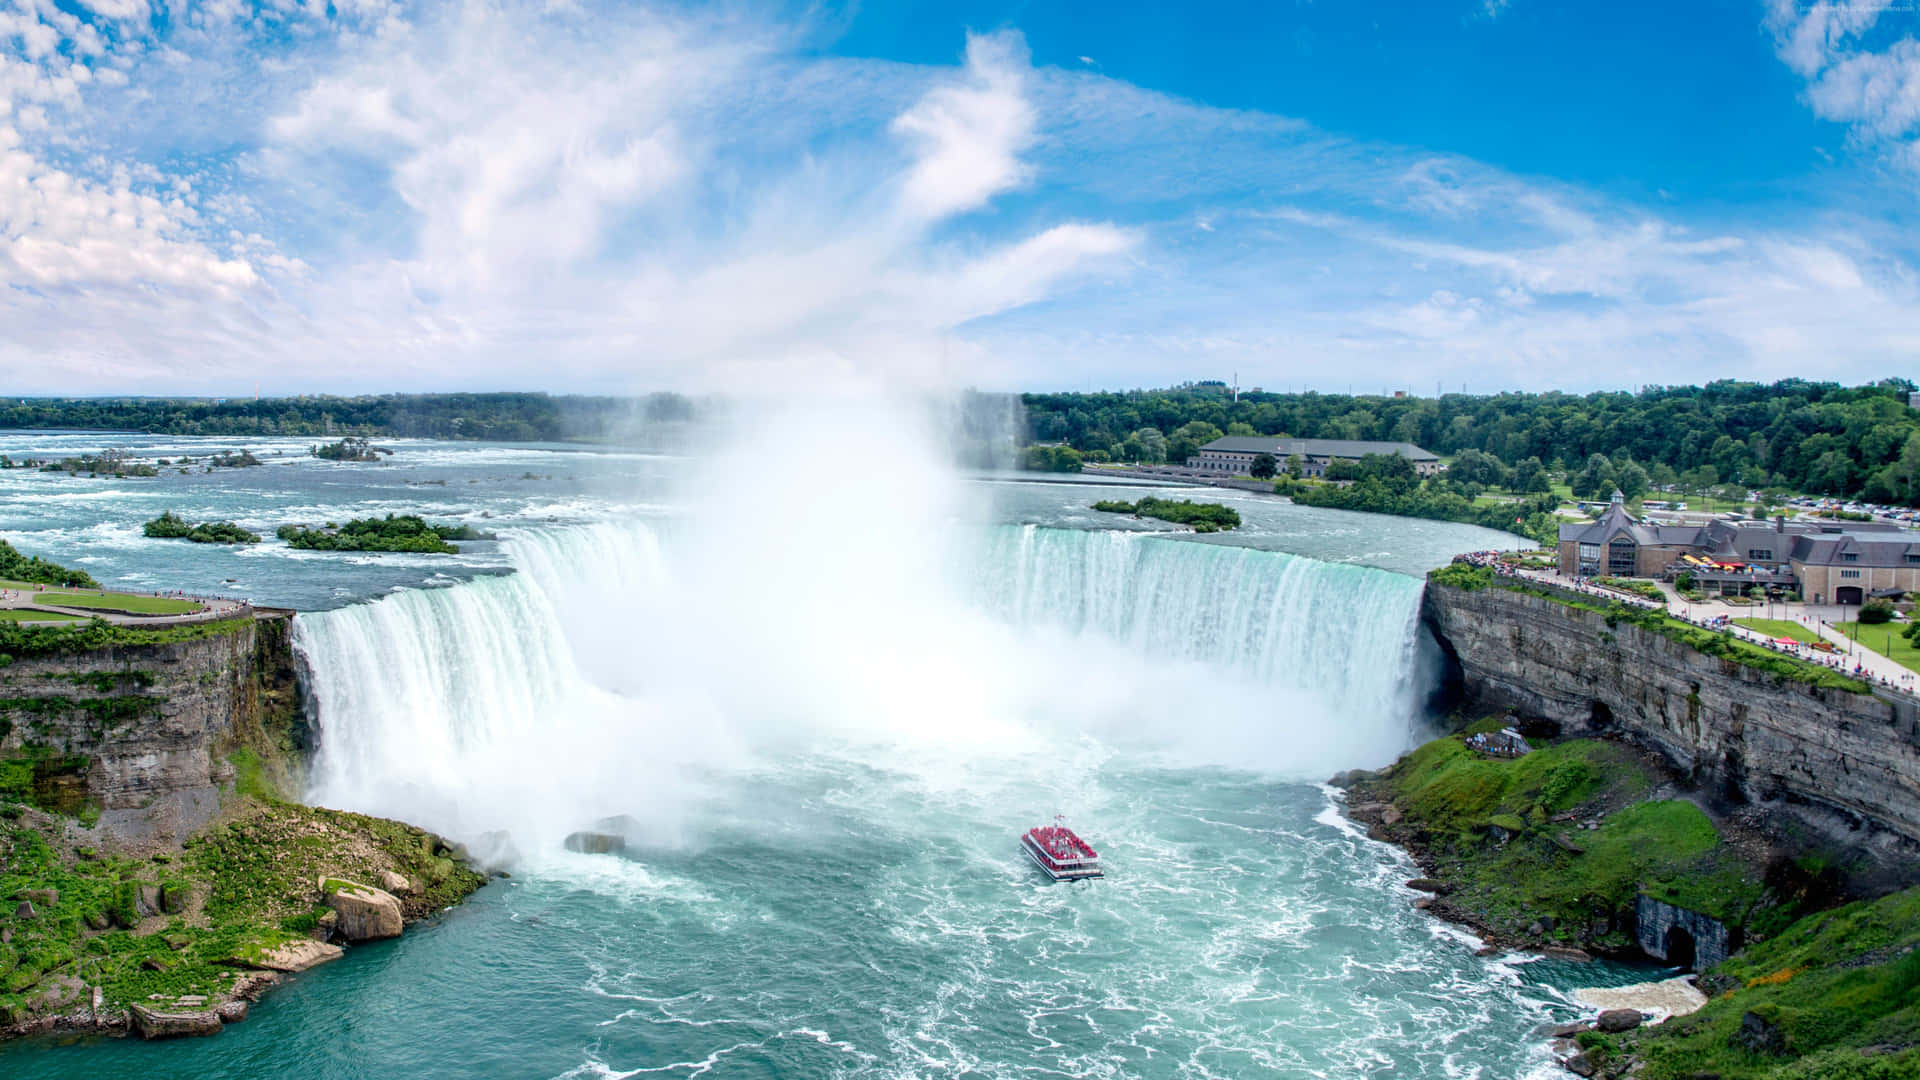 The natural beauty of Niagara Falls.